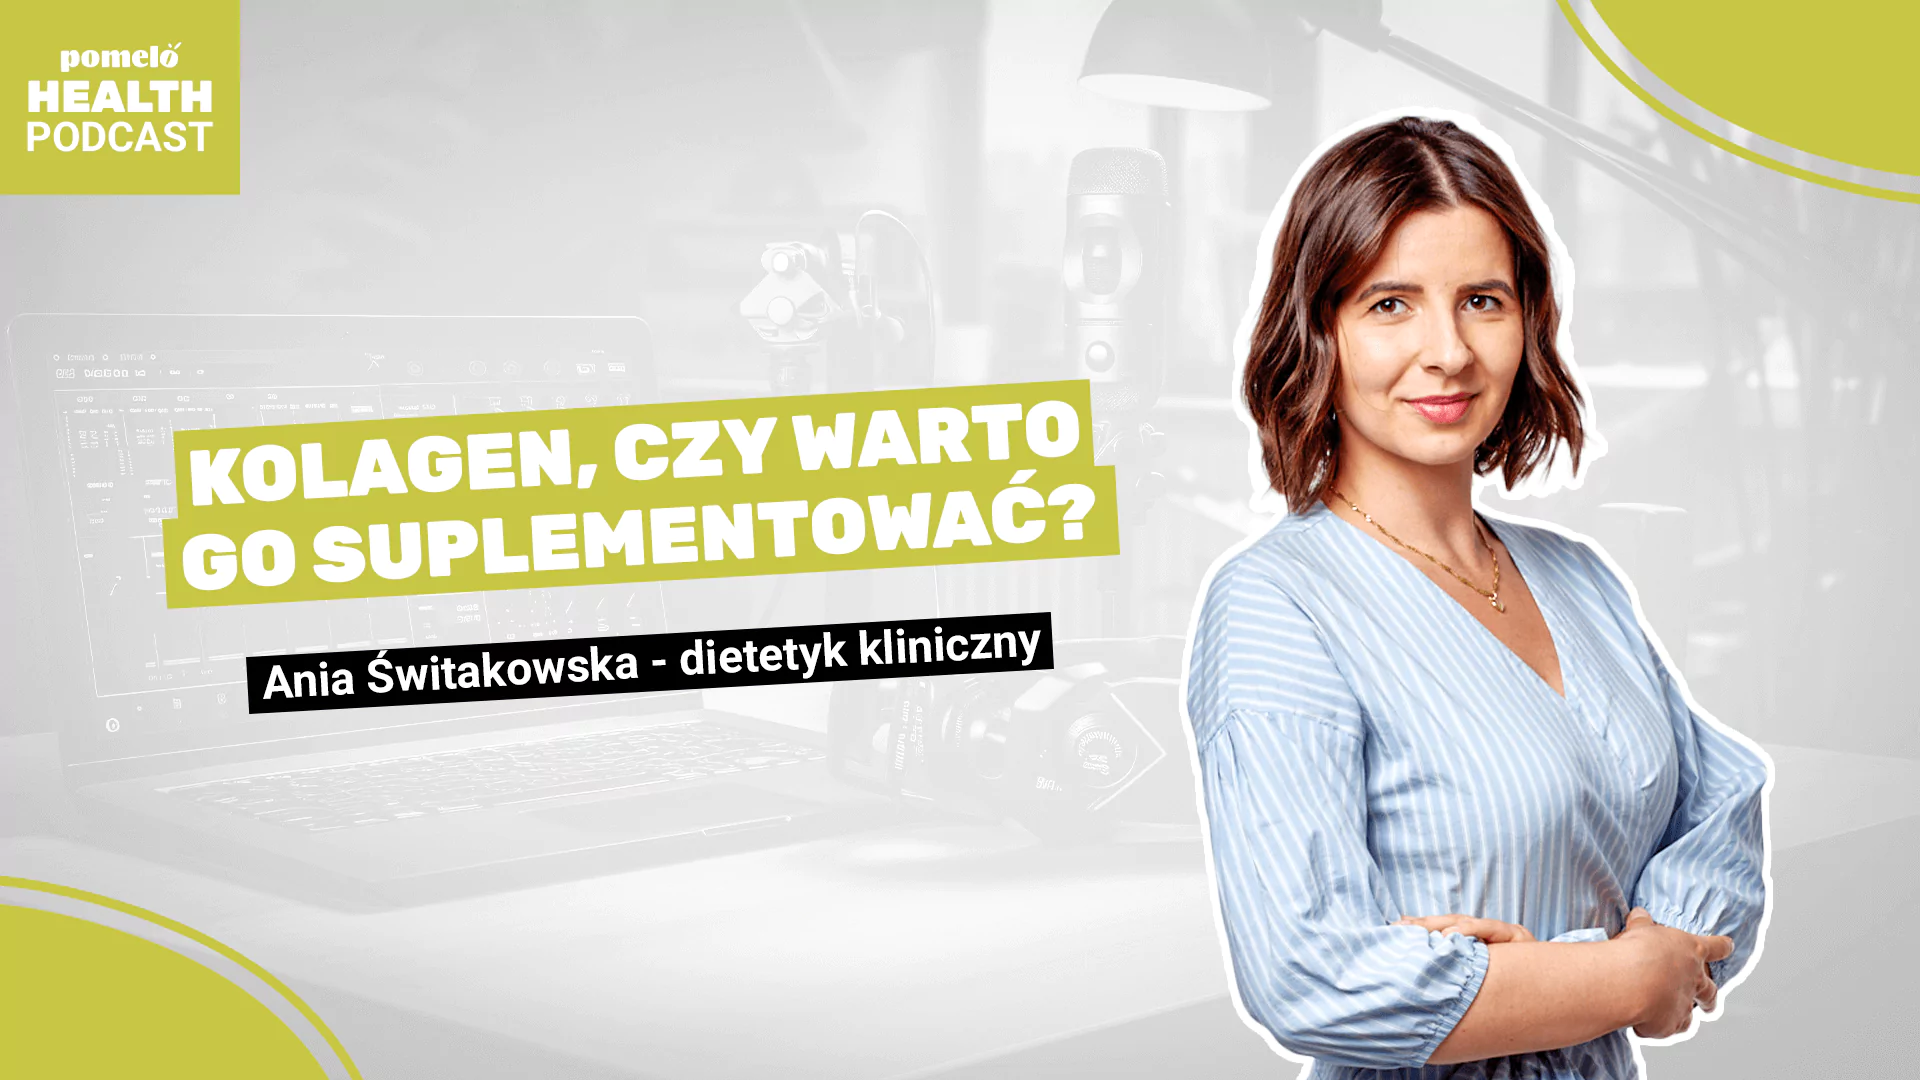 Ania Świtakowska - dietetyk